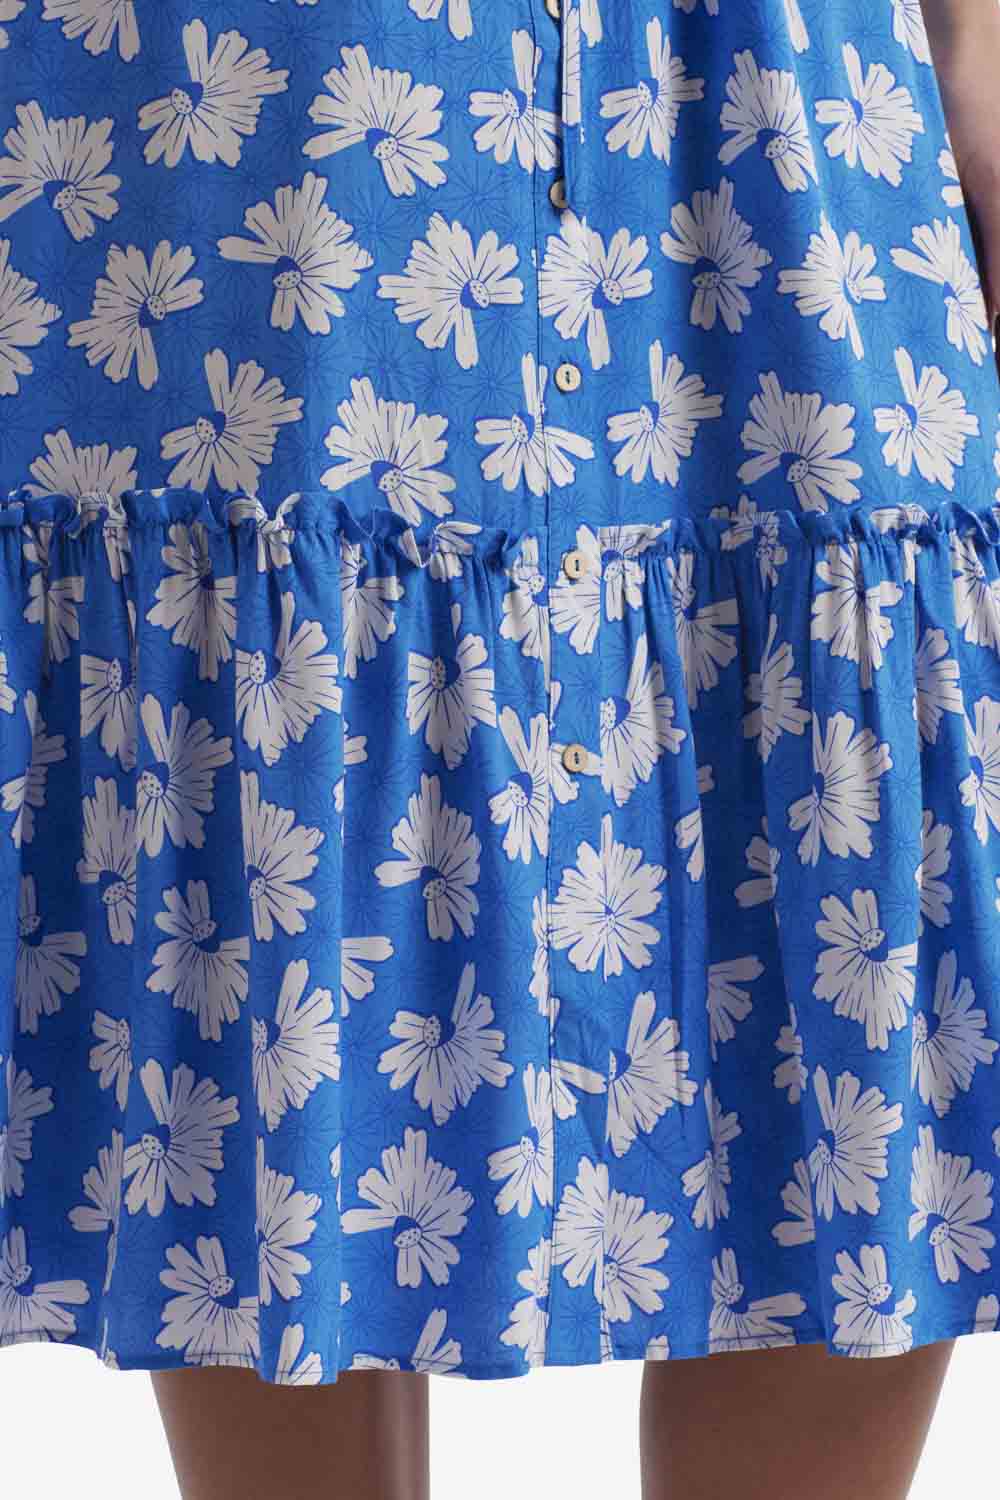 Coco Blue Floral Midi Dress